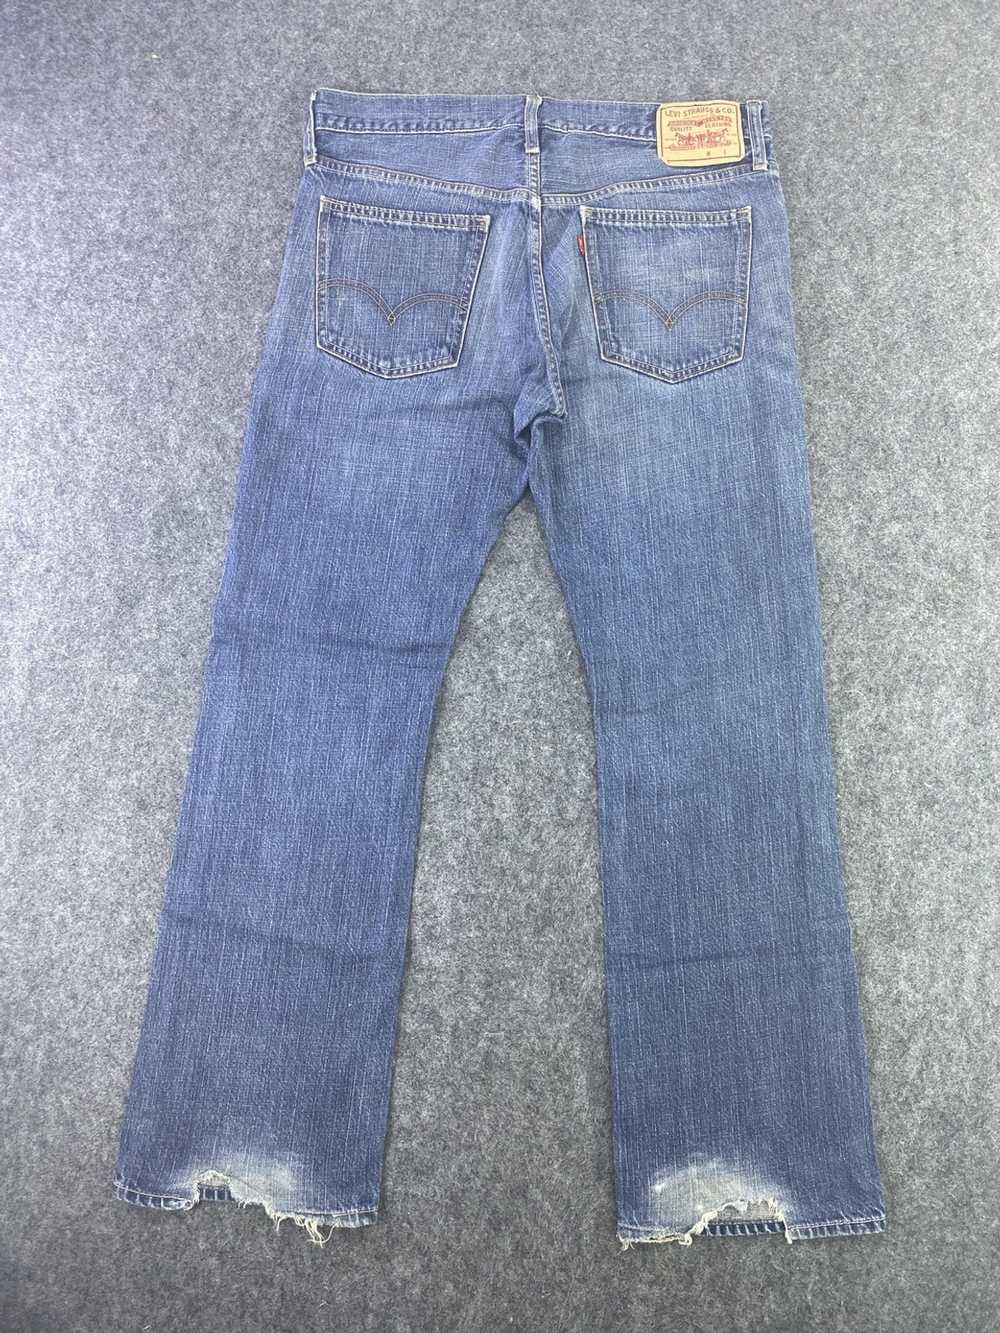 Jean × Levi's × Vintage Vintage Levis 507 Jeans B… - image 2